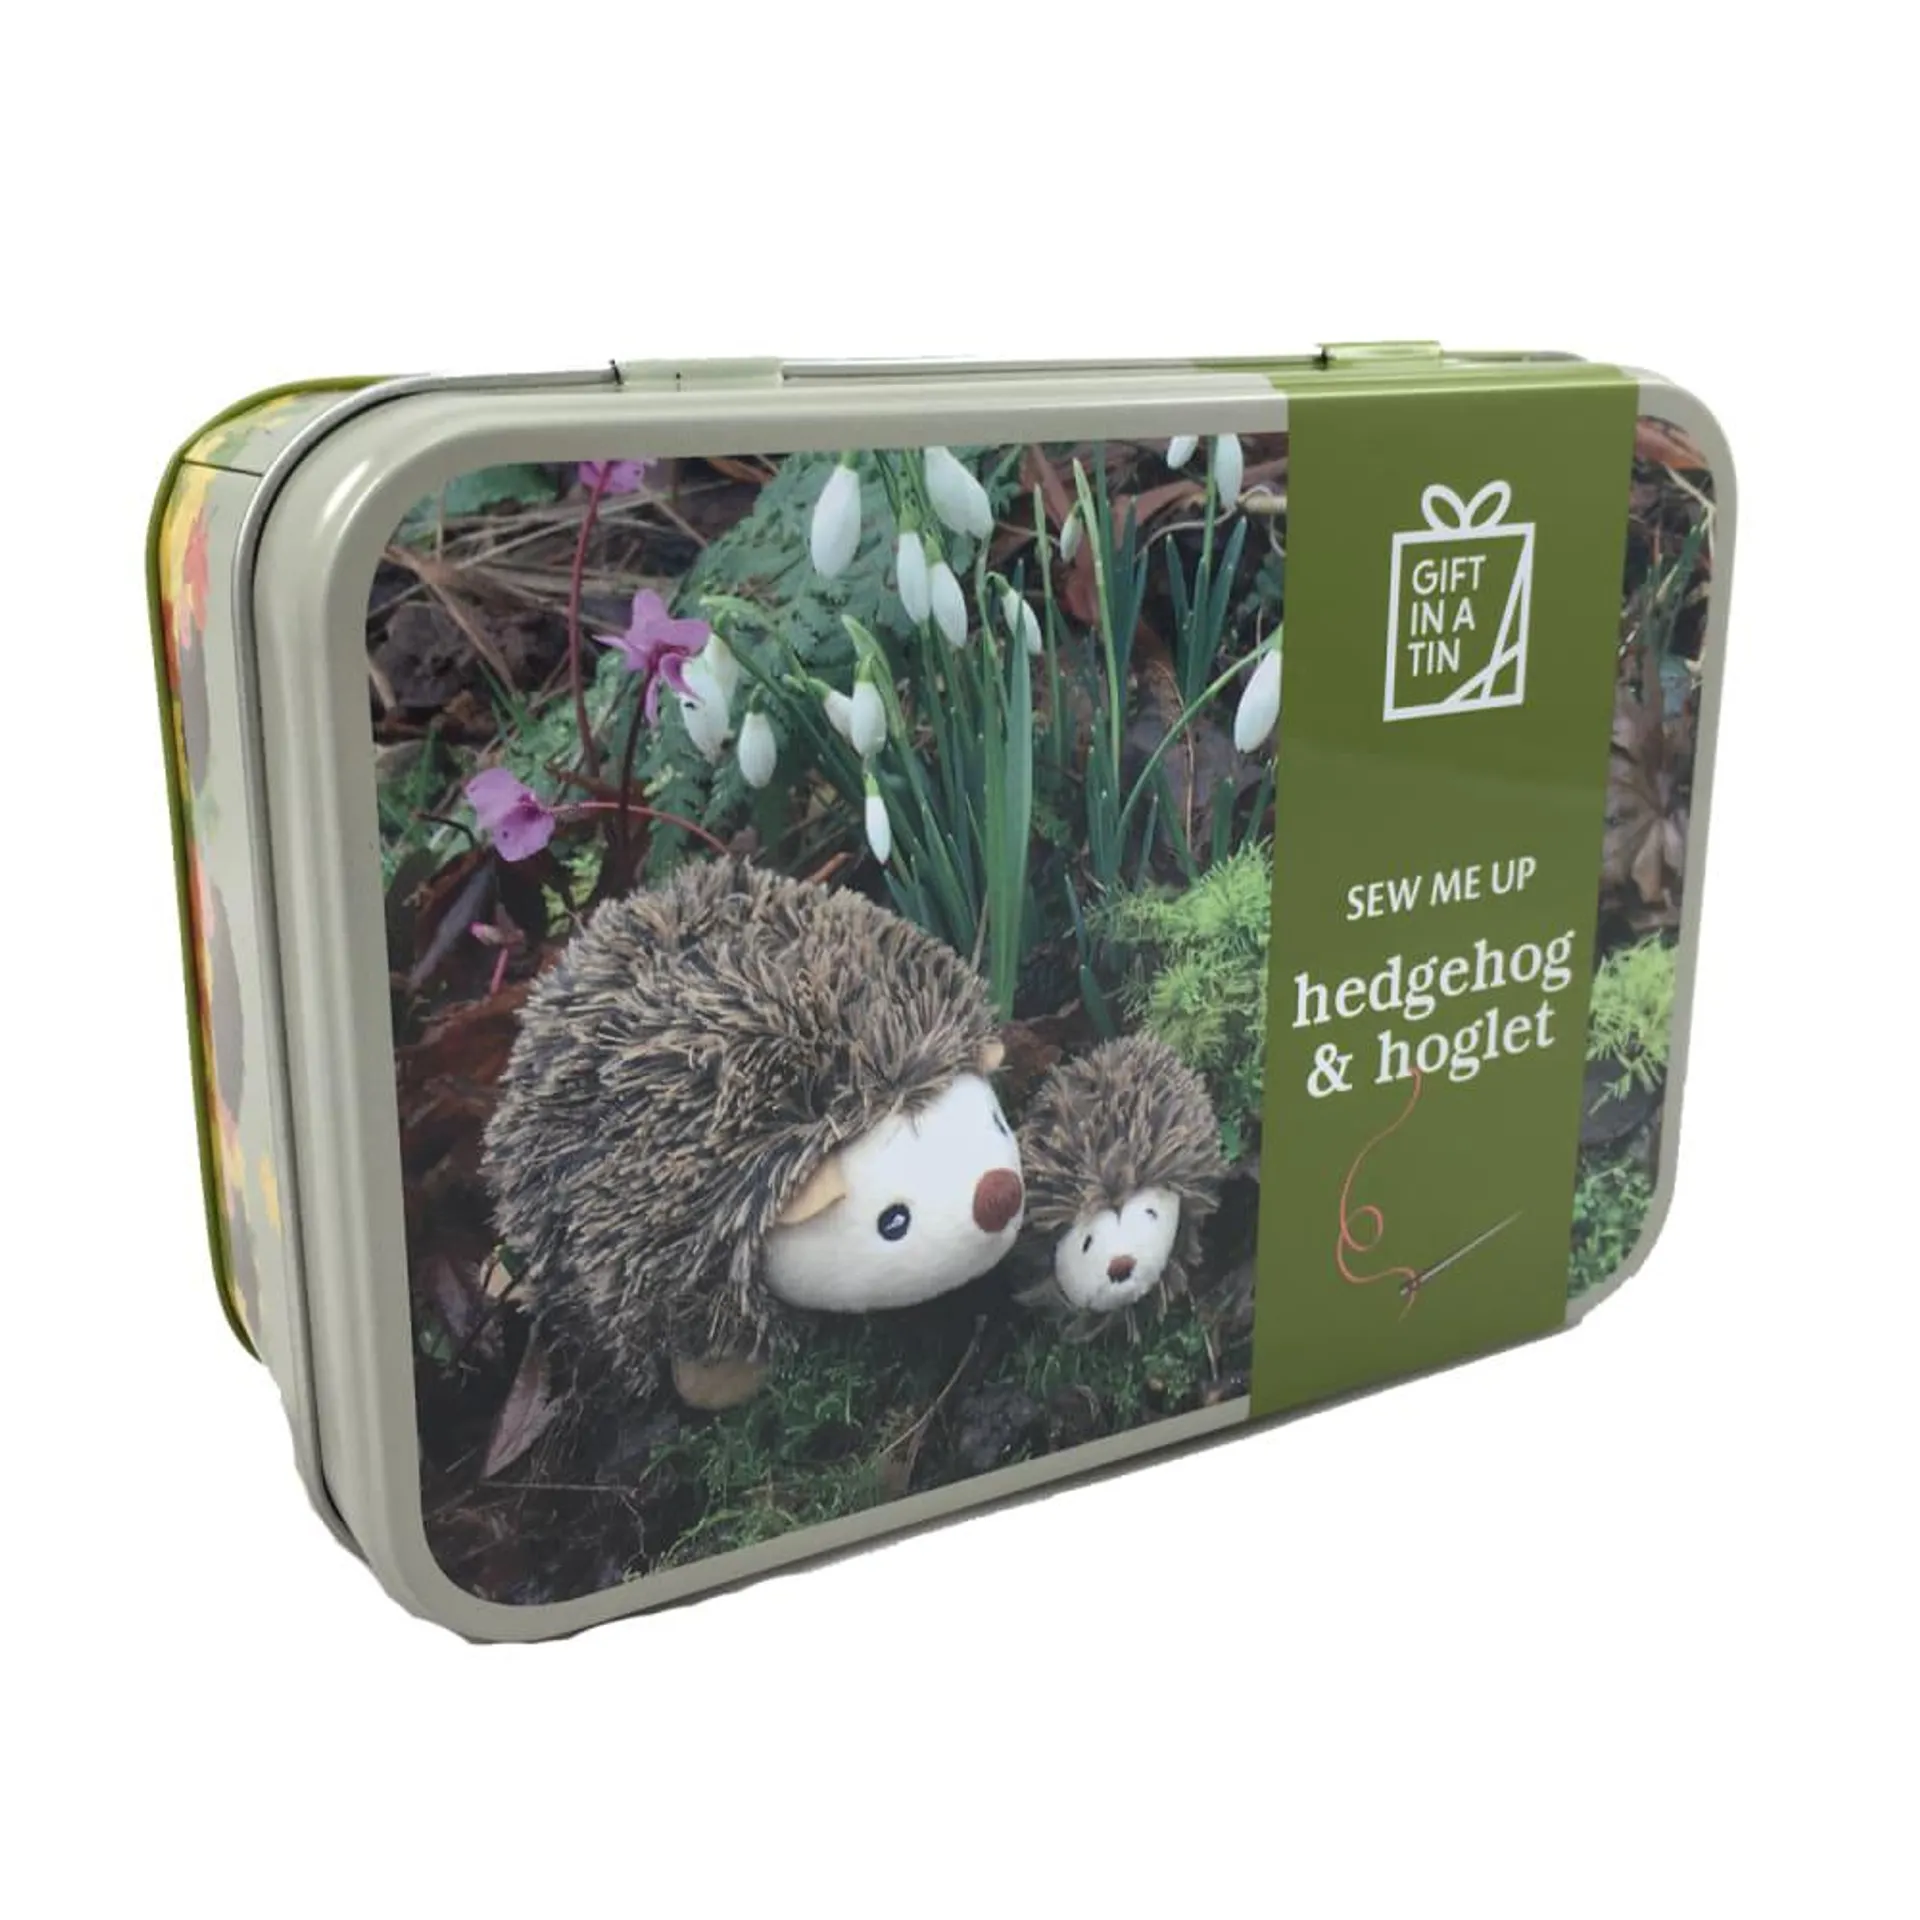 Hedgehog & Hoglet Sew Me Up Gift in a Tin